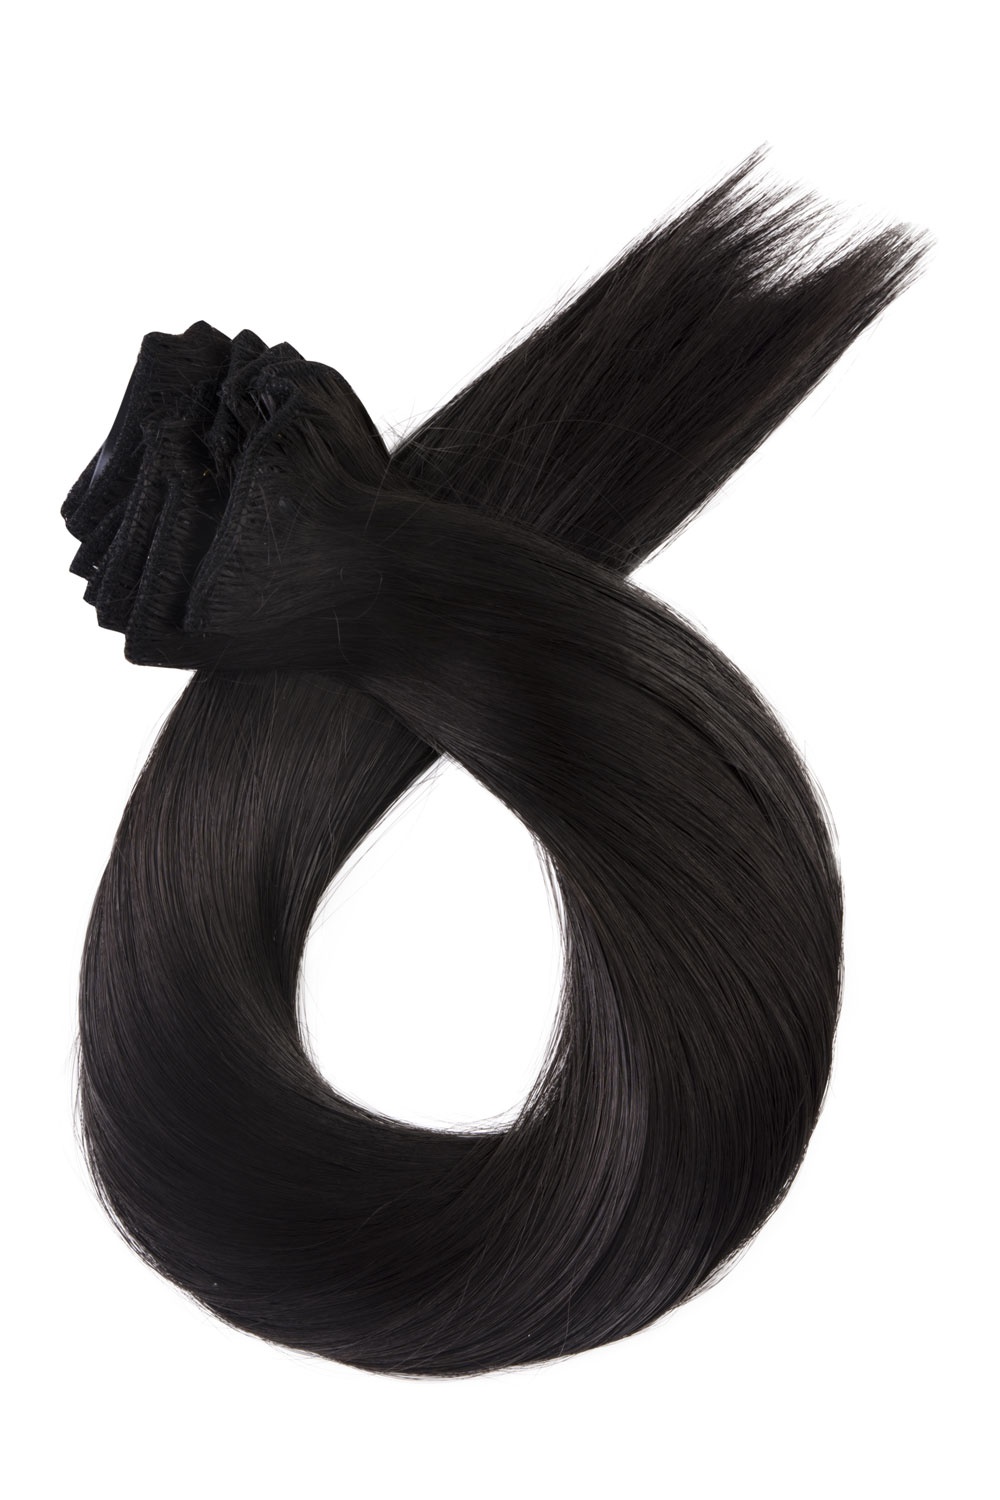 Tmavo hnedé clip in vlasy, 60cm, 180g, farba 2